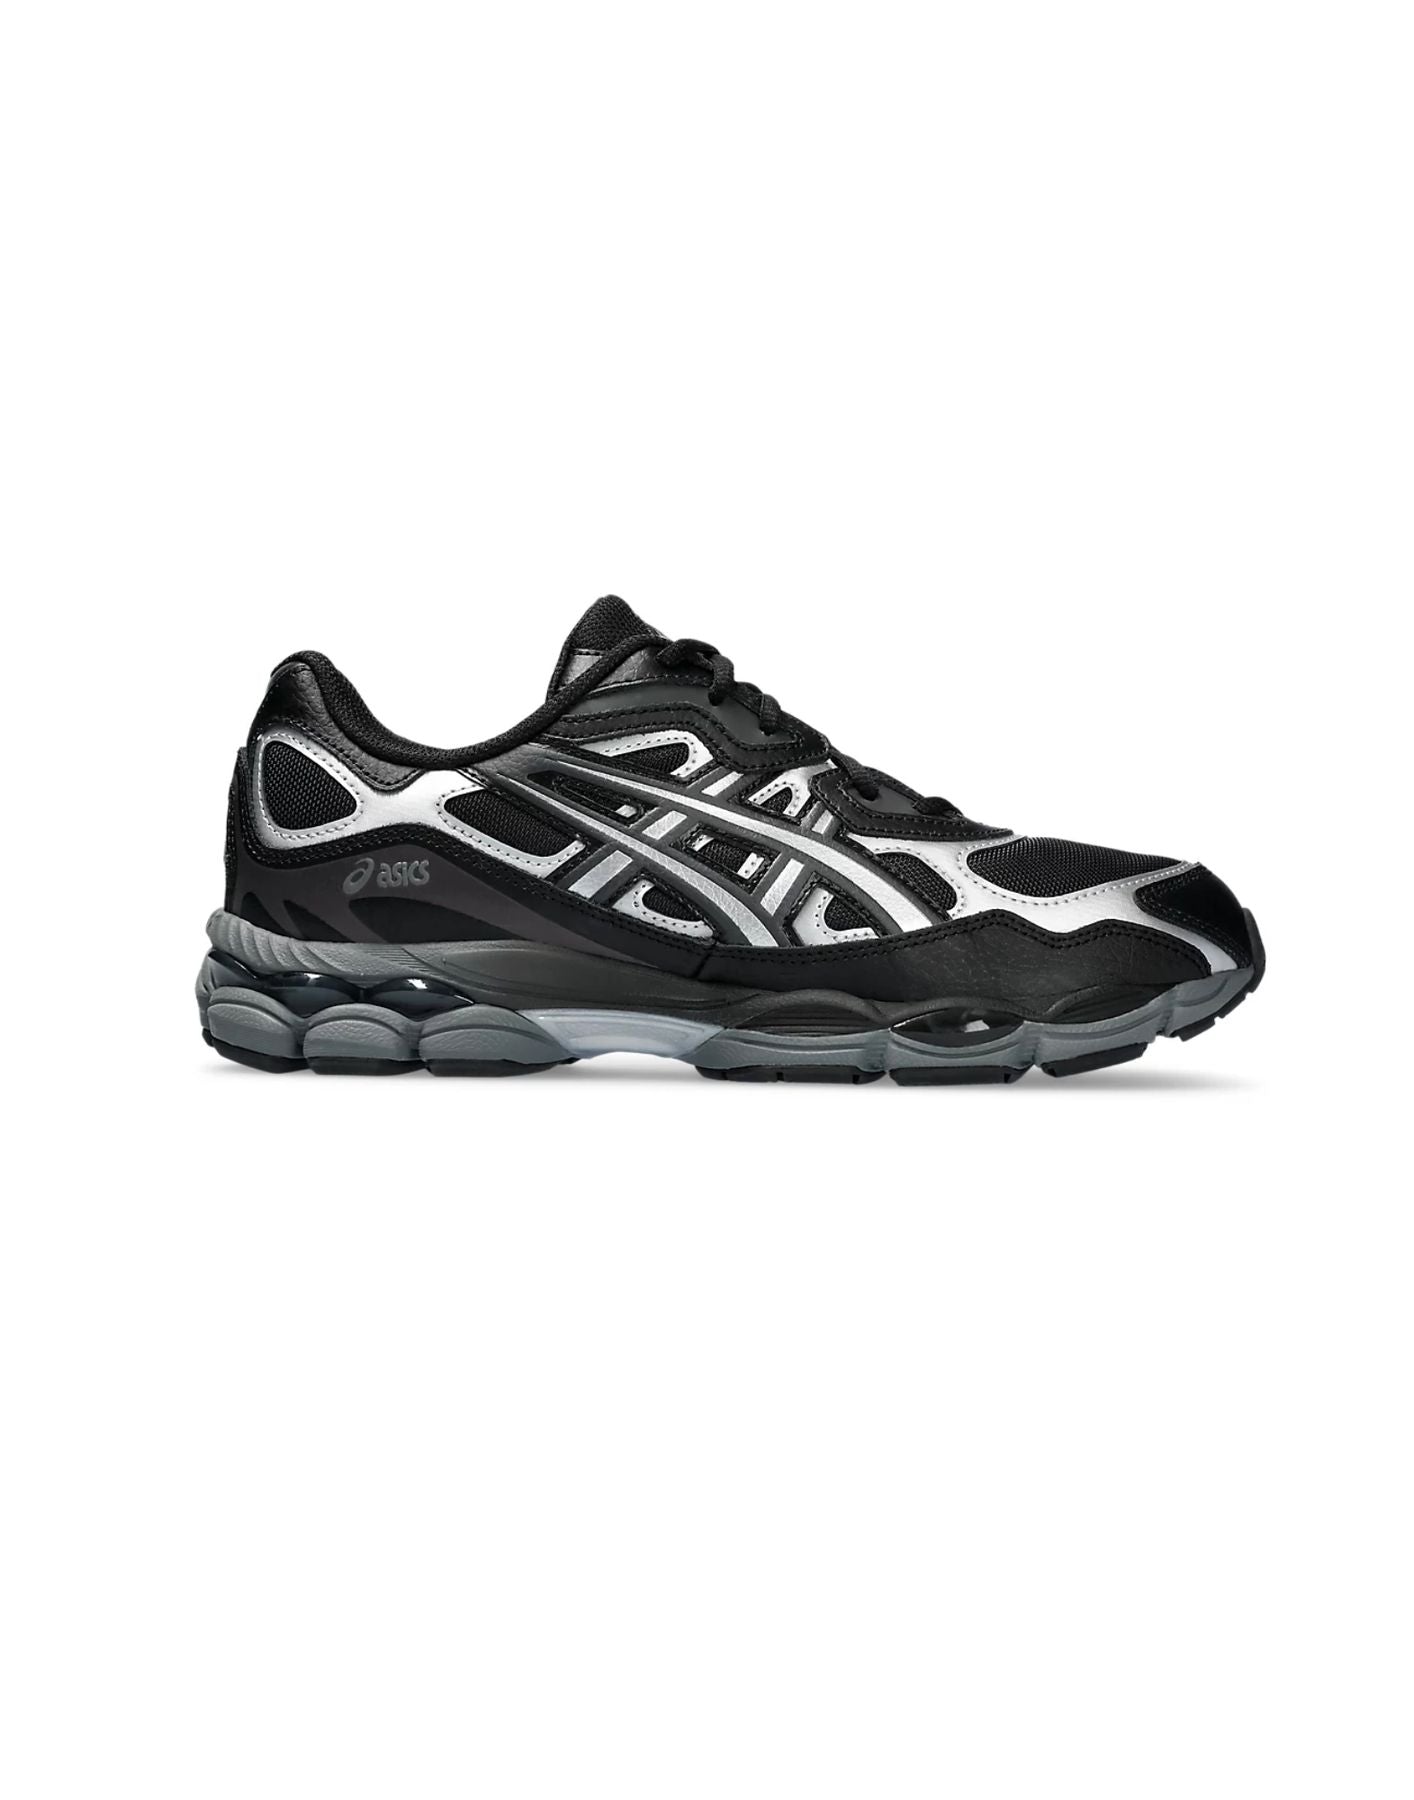 Schuhe für Mann gel-nyc grau/schwarz ASICS